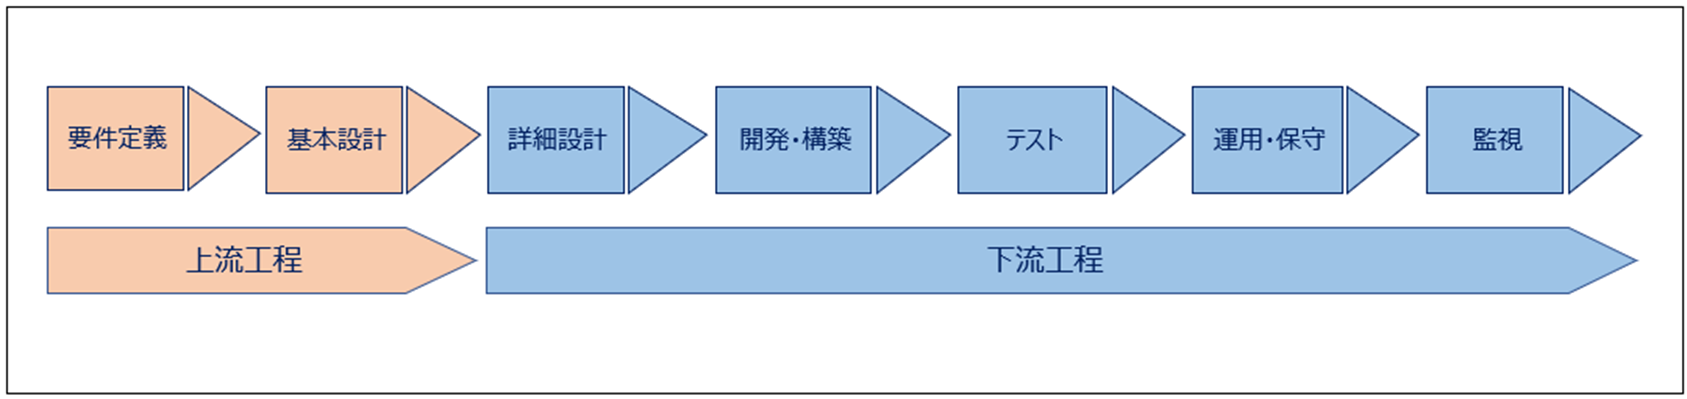 システム開発における工程図